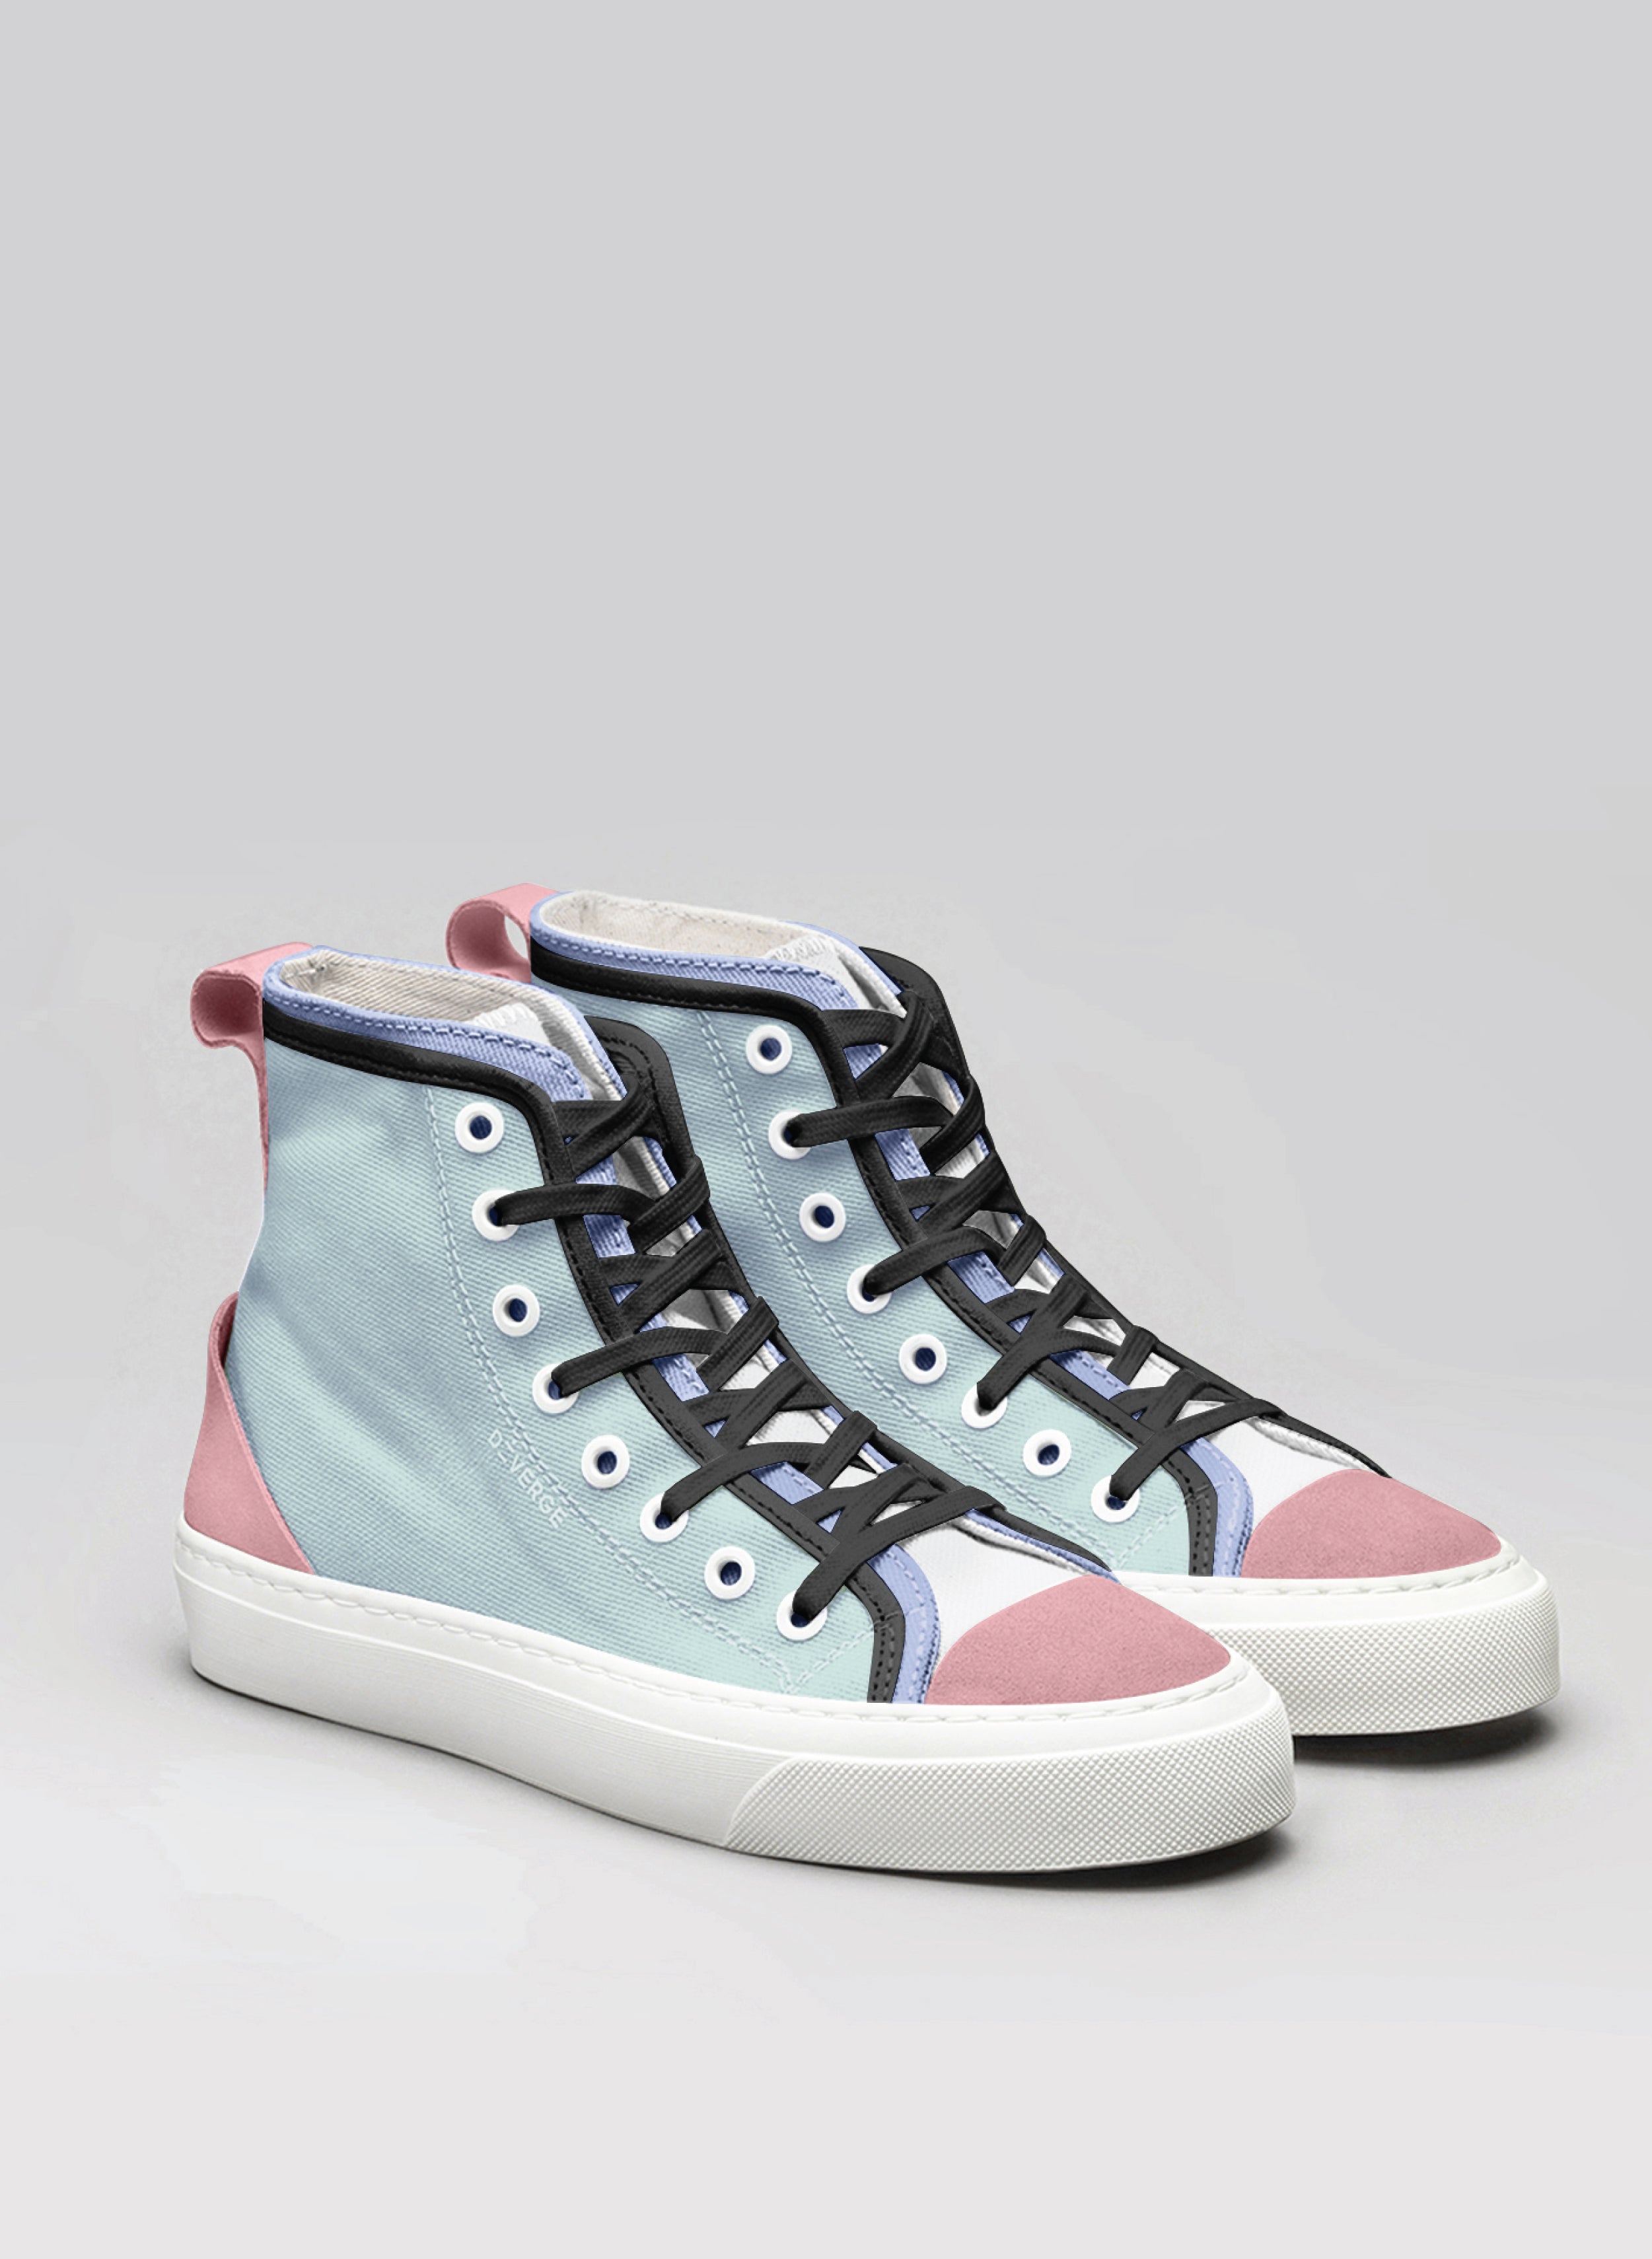 High top azul y rosa sneakers, diseñado por Diverge, mostrando impacto social y estilo personalizado.